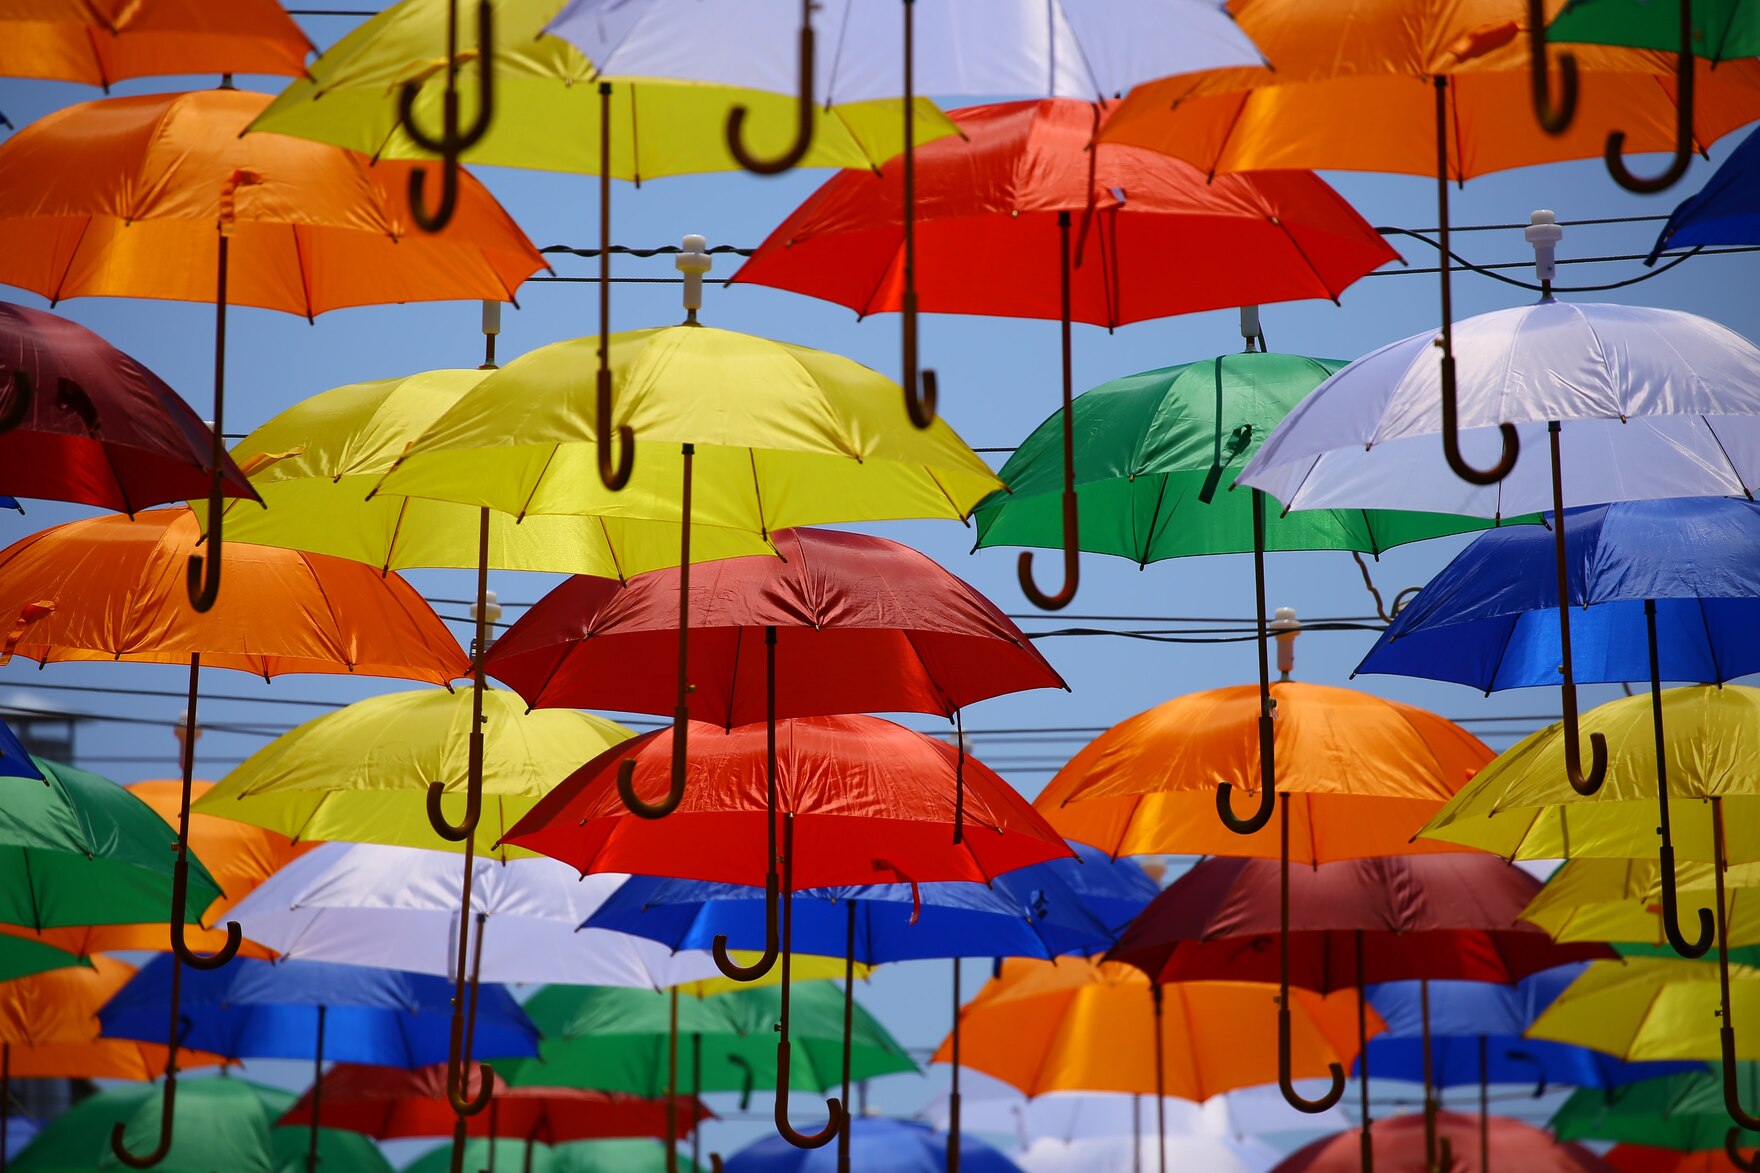 Bunte Regenschirme sind über zwischen Häuserwänden gespannten Leinen und Kabel aufgespannt.